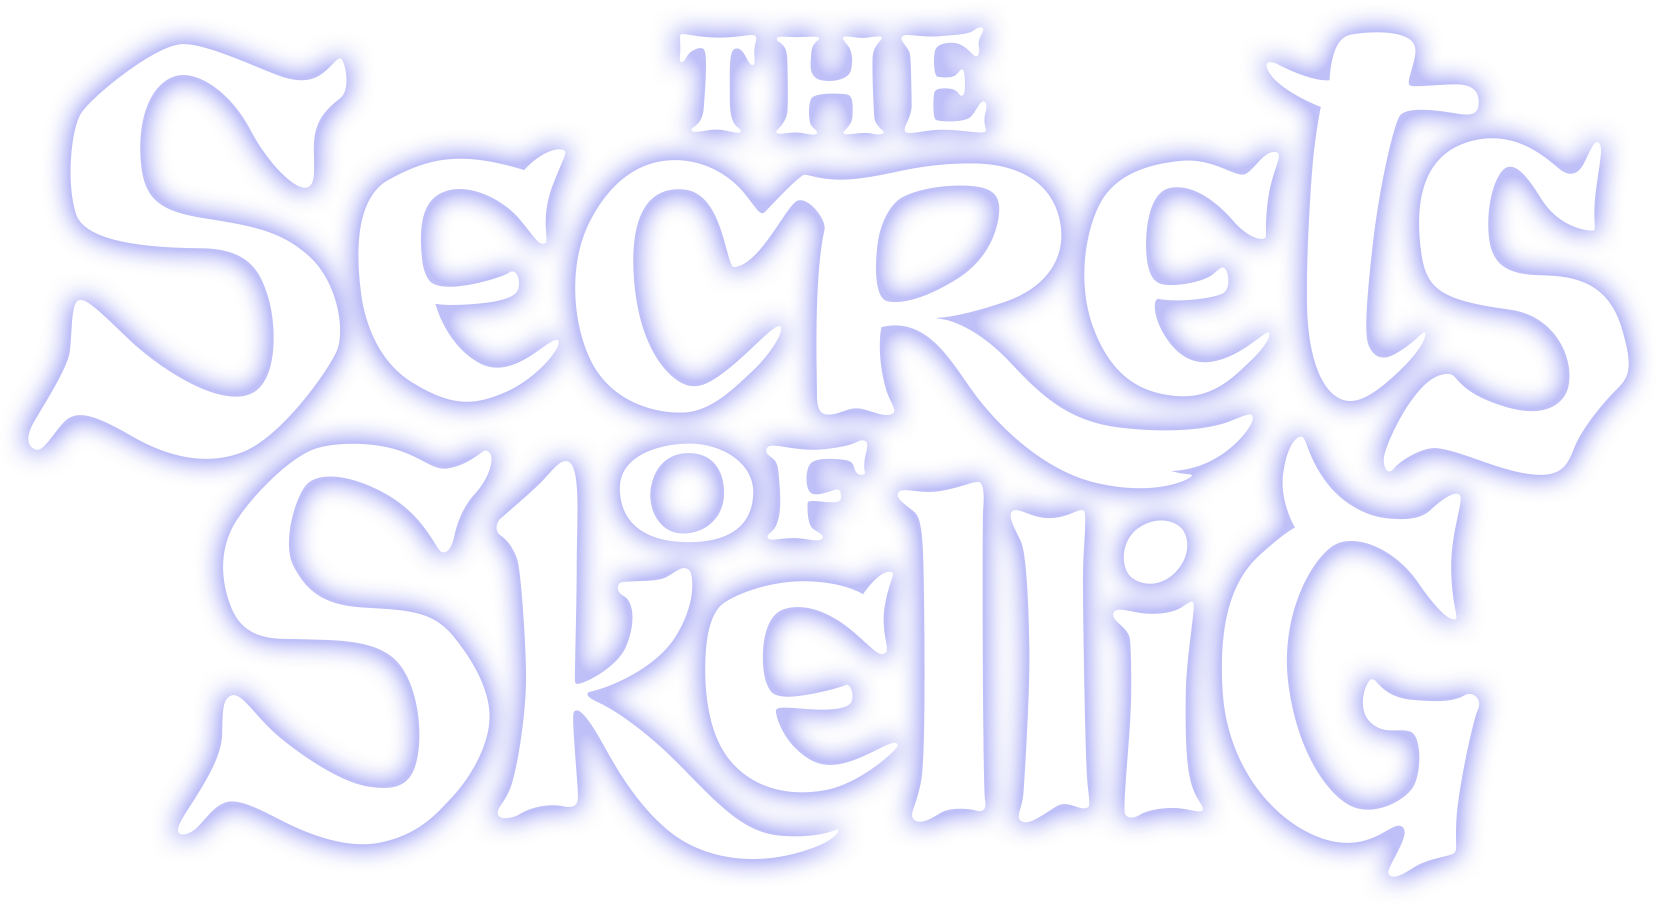 The Secrets of Skellig